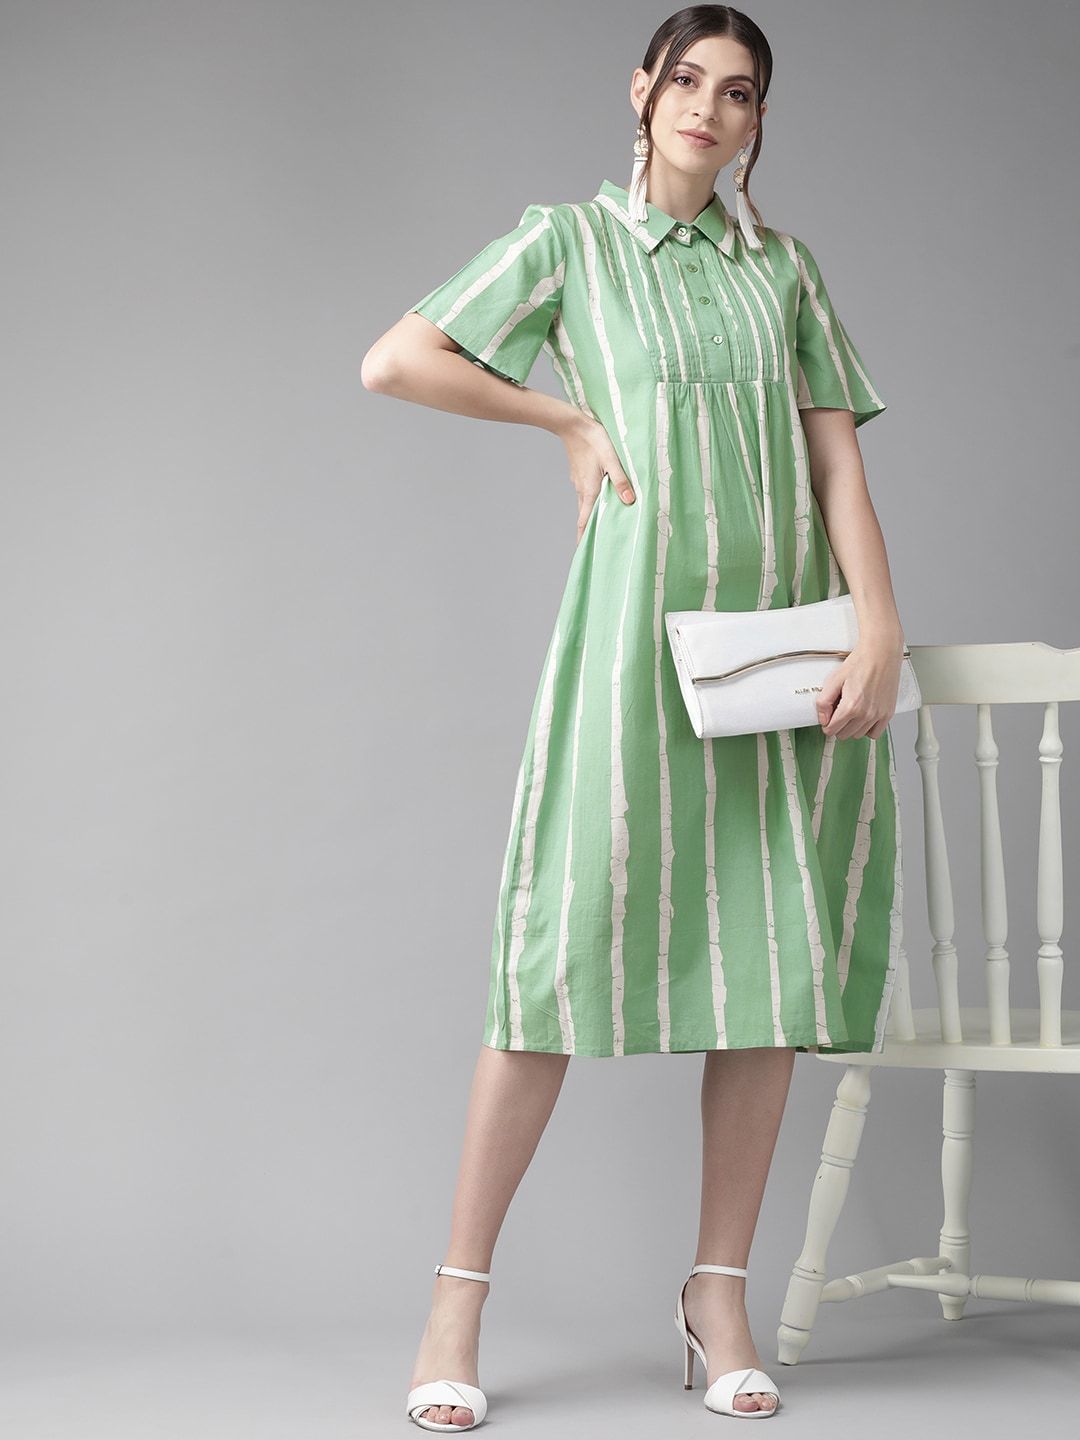 Women's  Green & White Striped Shirt Dress - AKS